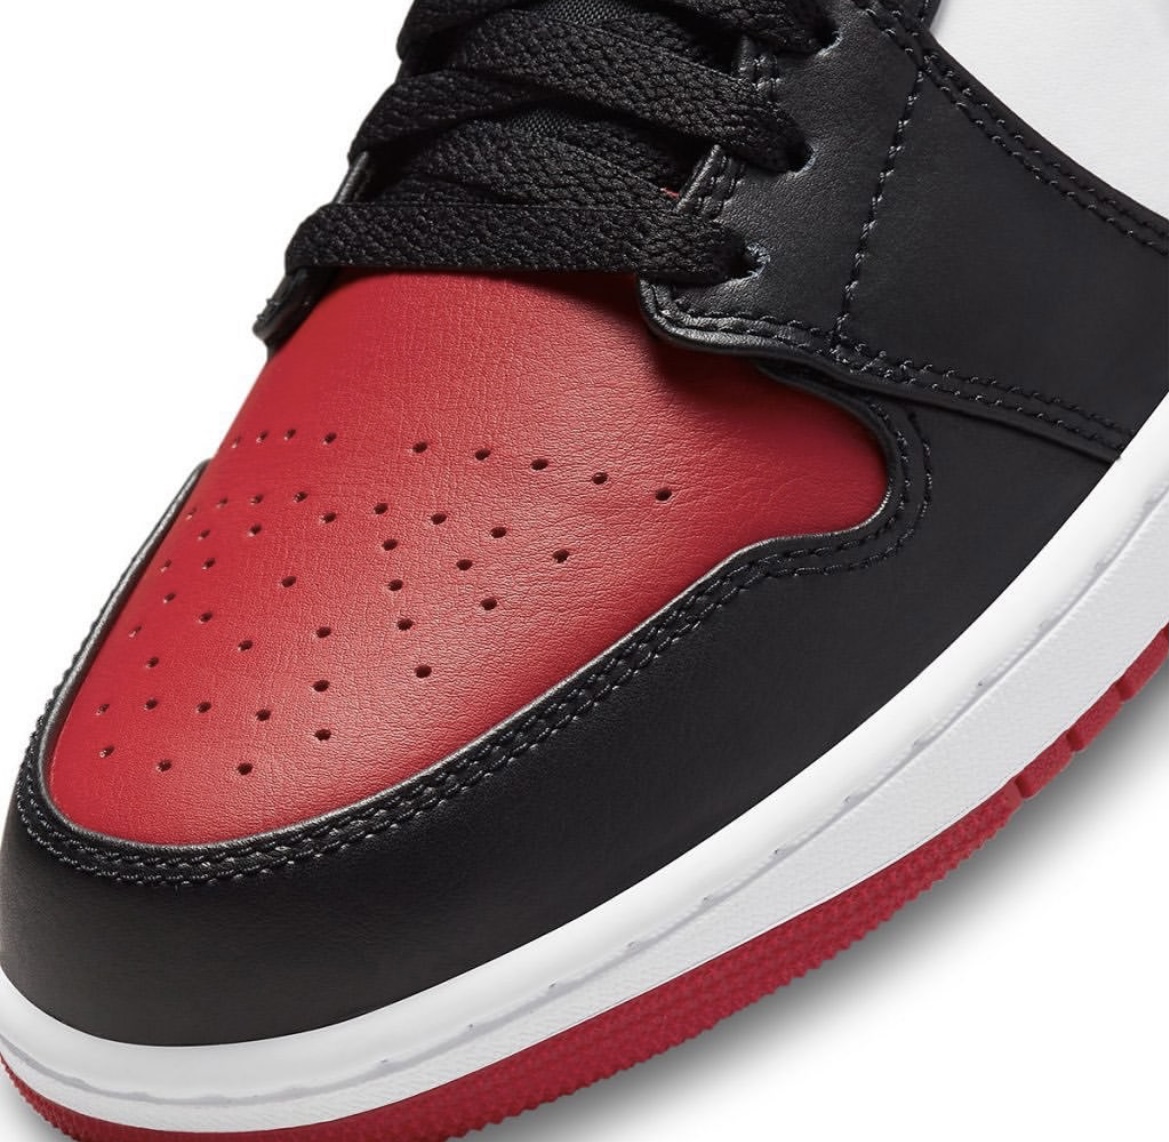 Nike】Air Jordan 1 Low “Bred Toe”が国内4月9日に再販予定 